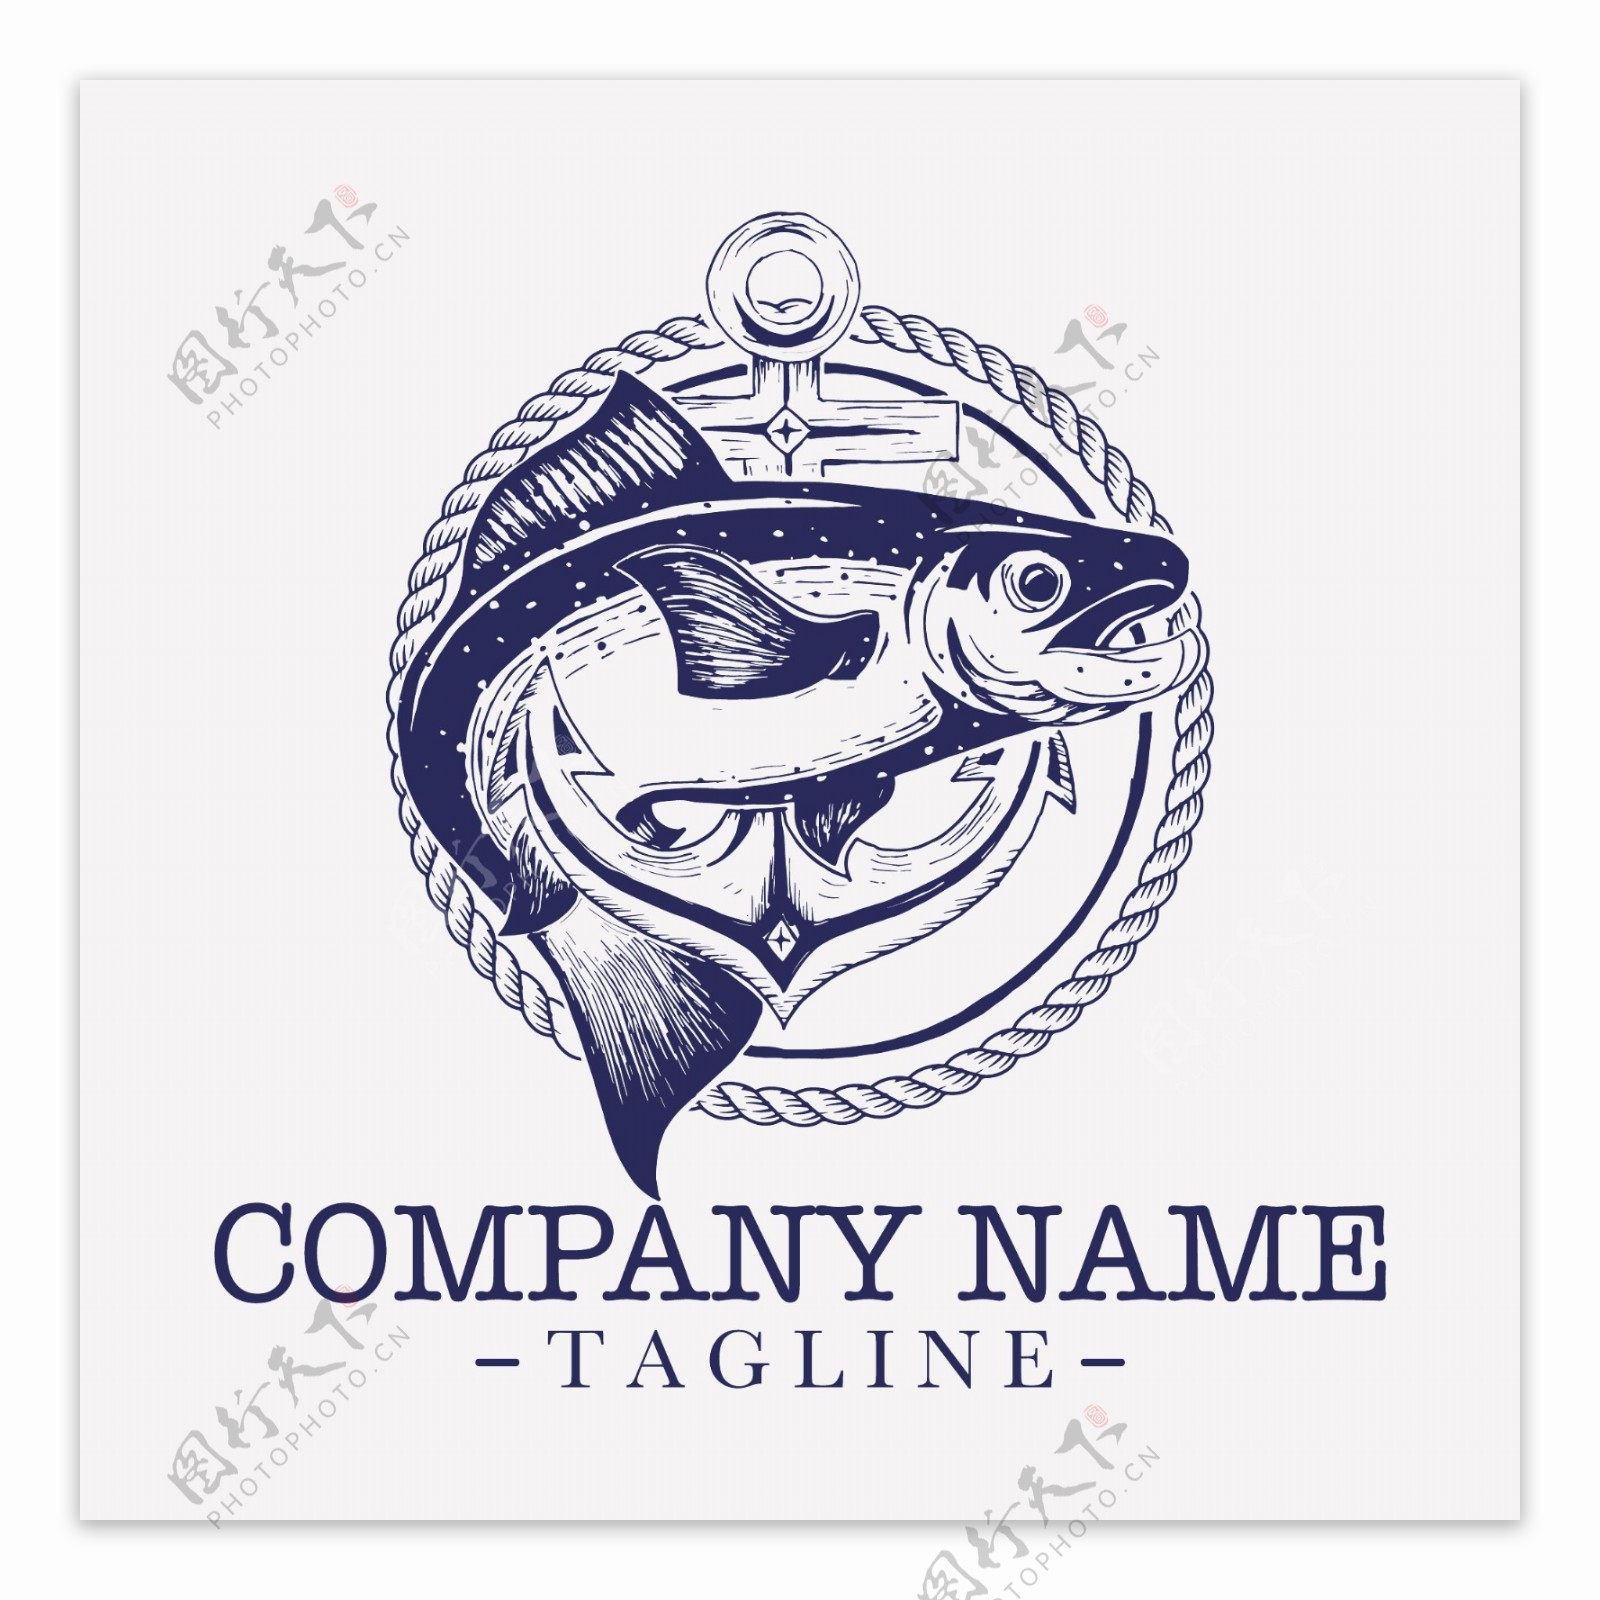 捕鱼标志logo模板